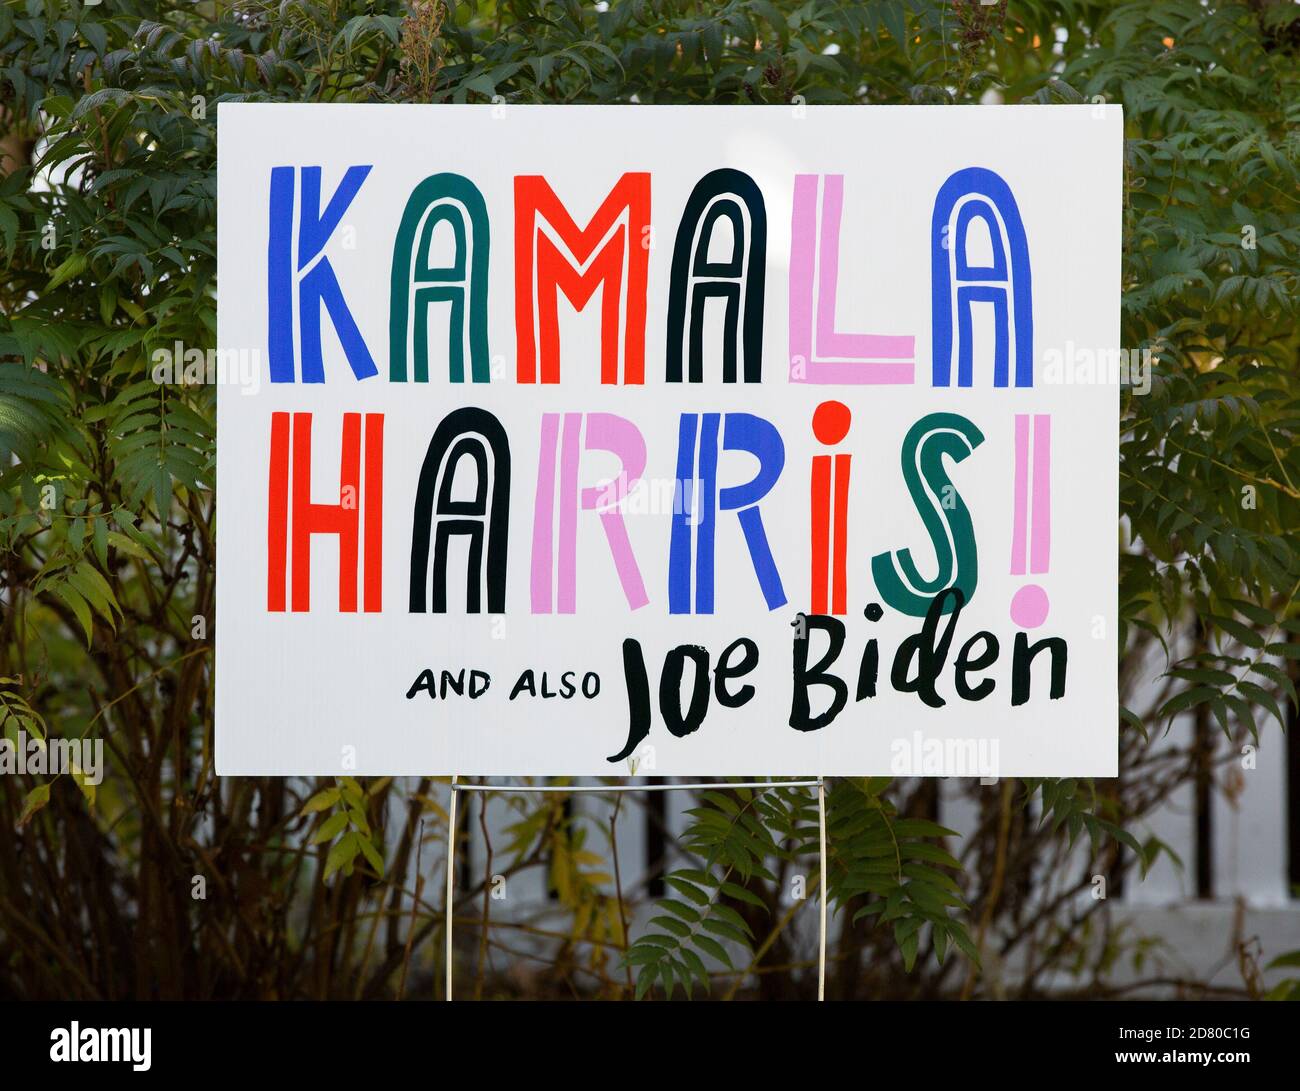 2020 symbole de cour présidentielle pour les démocrates Kamala Harris et Joe Biden Banque D'Images